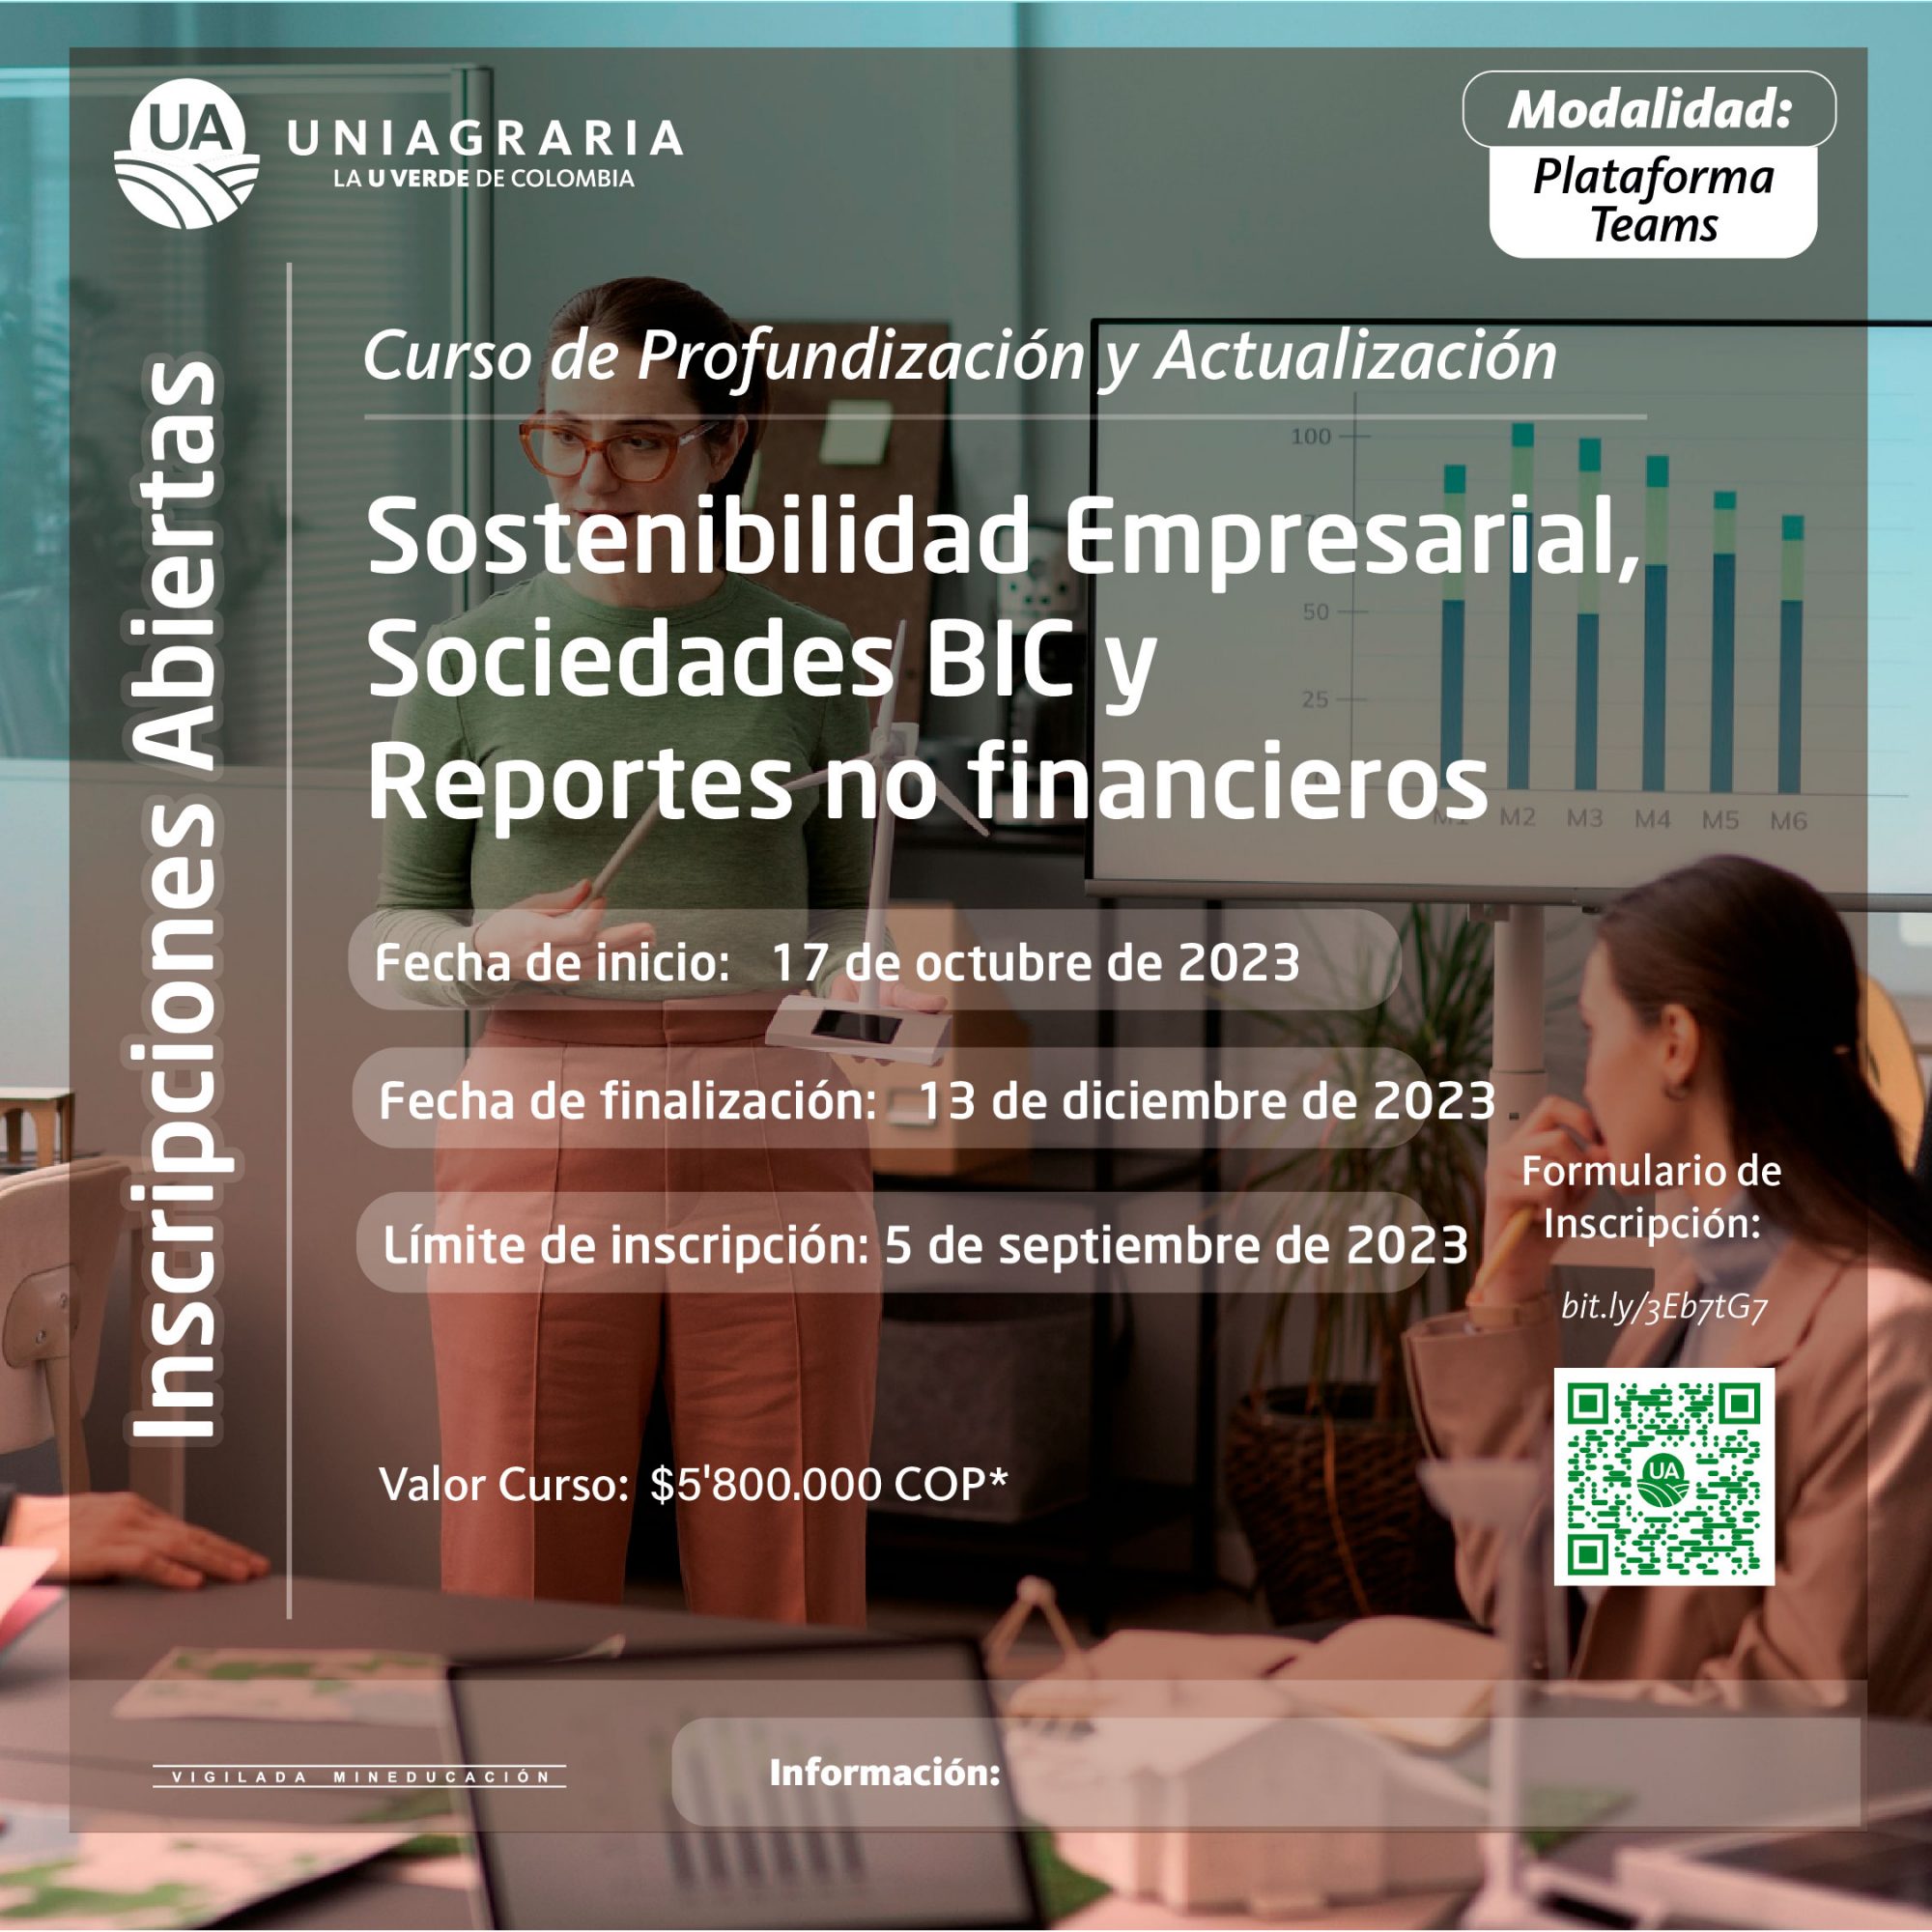 Curso de Profundización y Actualización en Sostenibilidad Empresarial, Sociedades BIC y Reportes no financieros